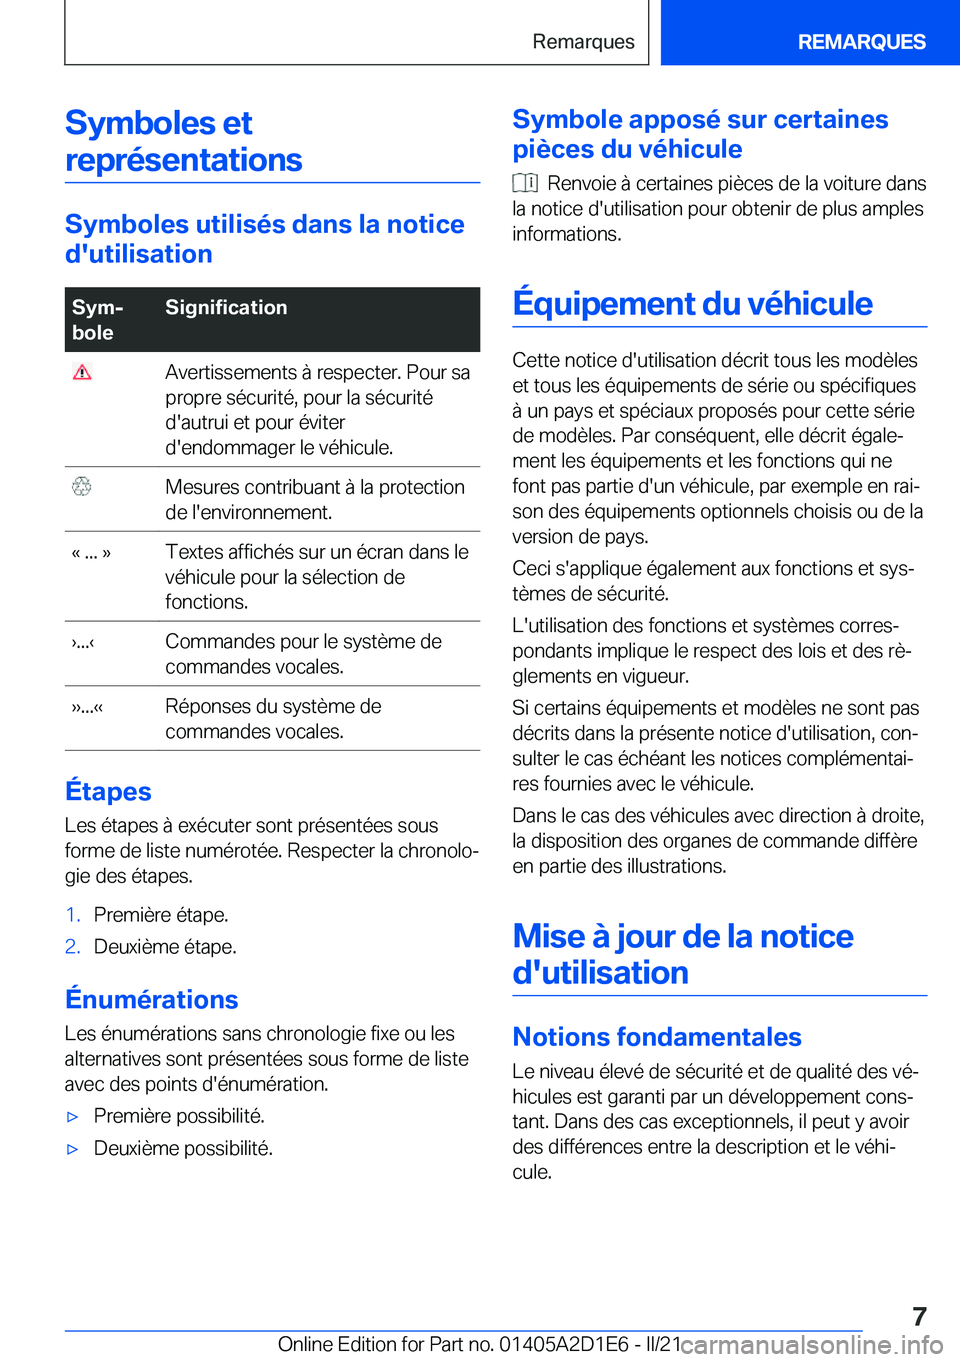 BMW X6 M 2021  Notices Demploi (in French) �S�y�m�b�o�l�e�s��e�t�r�e�p�r�é�s�e�n�t�a�t�i�o�n�s
�S�y�m�b�o�l�e�s��u�t�i�l�i�s�é�s��d�a�n�s��l�a��n�o�t�i�c�e
�d�'�u�t�i�l�i�s�a�t�i�o�n
�S�y�mj
�b�o�l�e�S�i�g�n�i�f�i�c�a�t�i�o�n��A�v